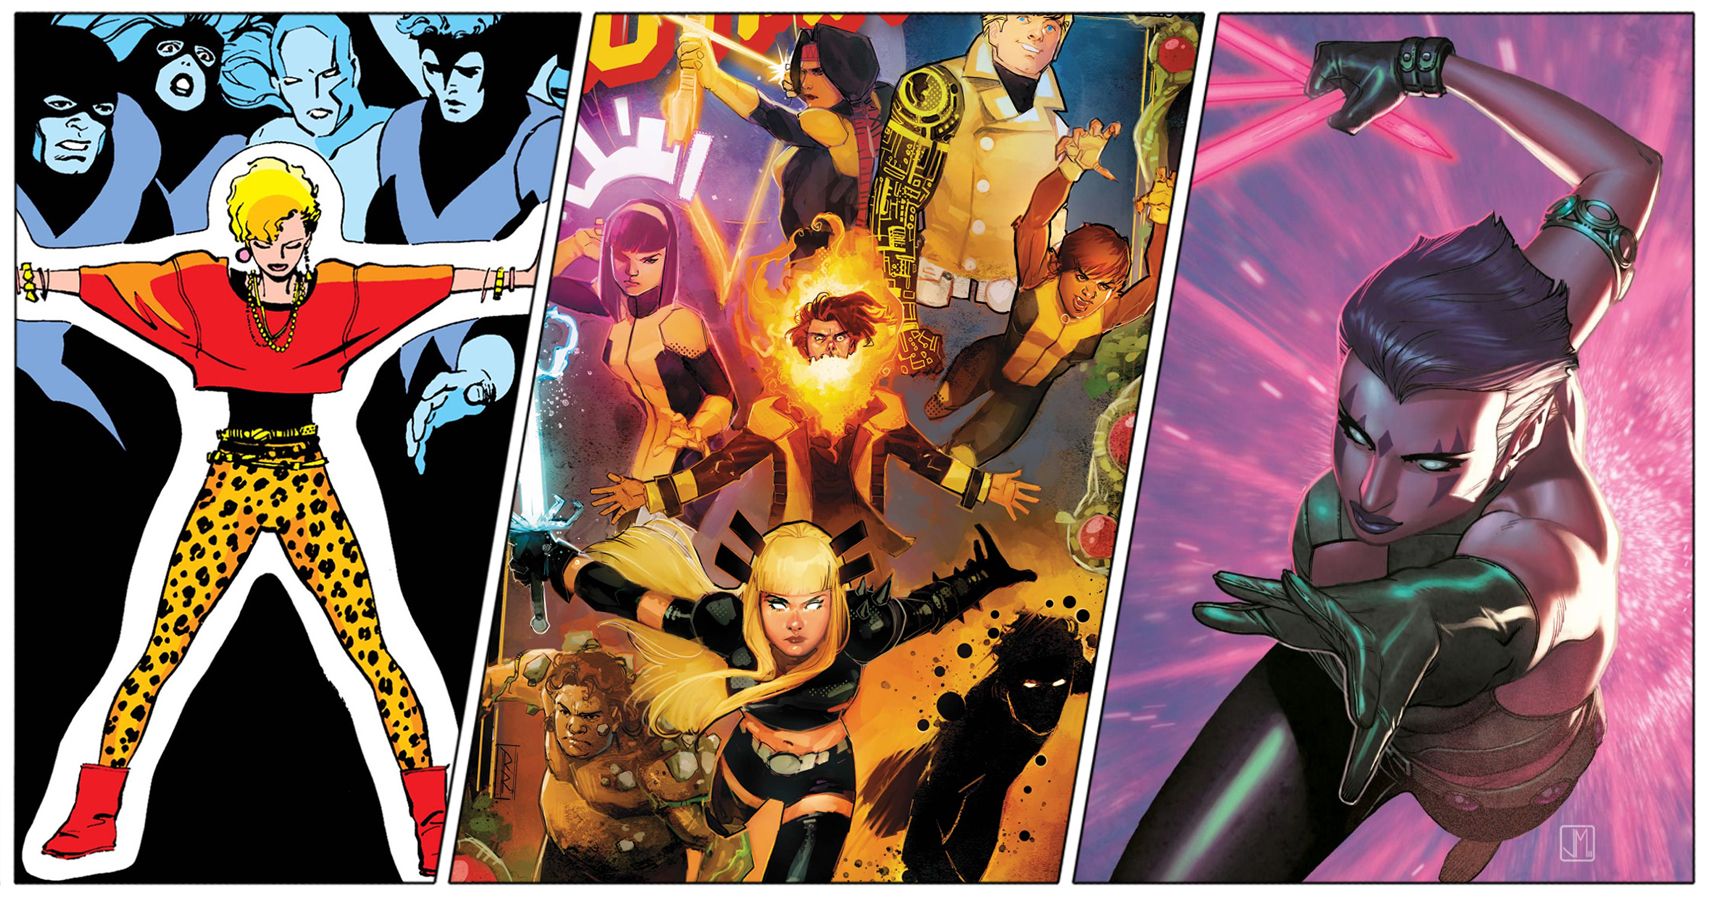 10. X-Men: The New Mutants - wide 7